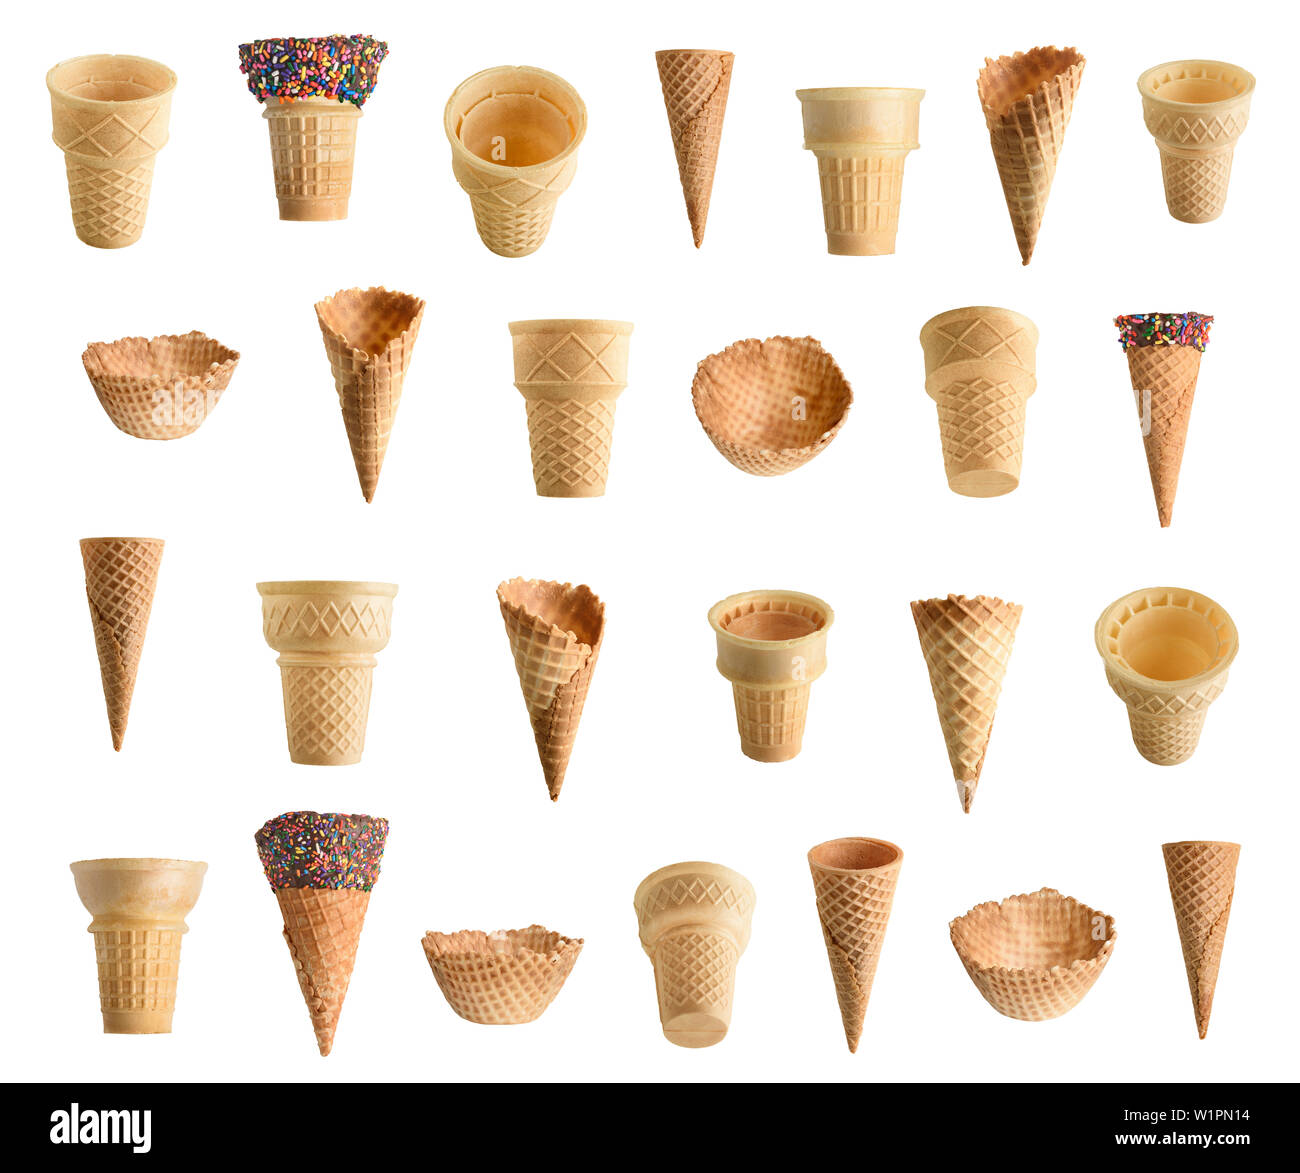 Sammlung von Eistüten mit Schokolade und Streuseln auf weißem Hintergrund  Stockfotografie - Alamy